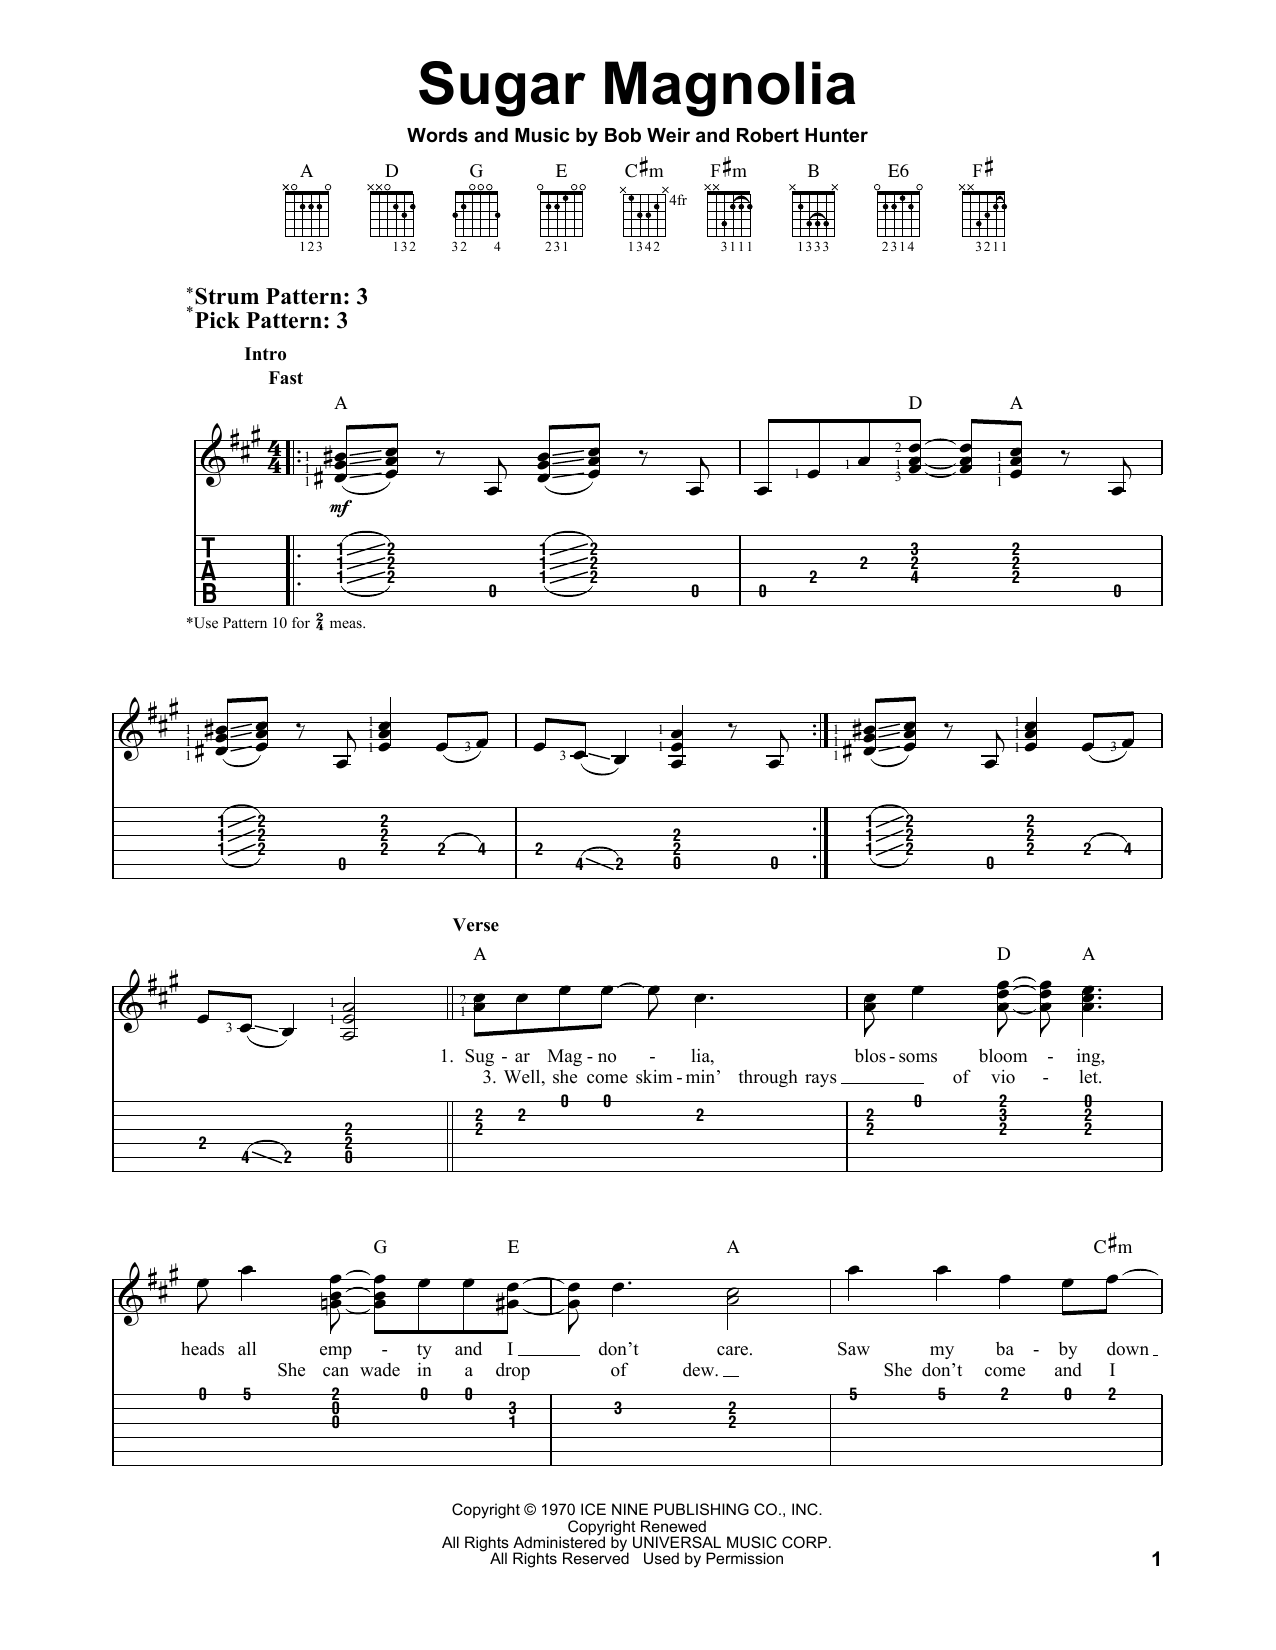 Grateful Dead Sugar Magnolia Sheet Music Notes & Chords for Ukulele - Download or Print PDF